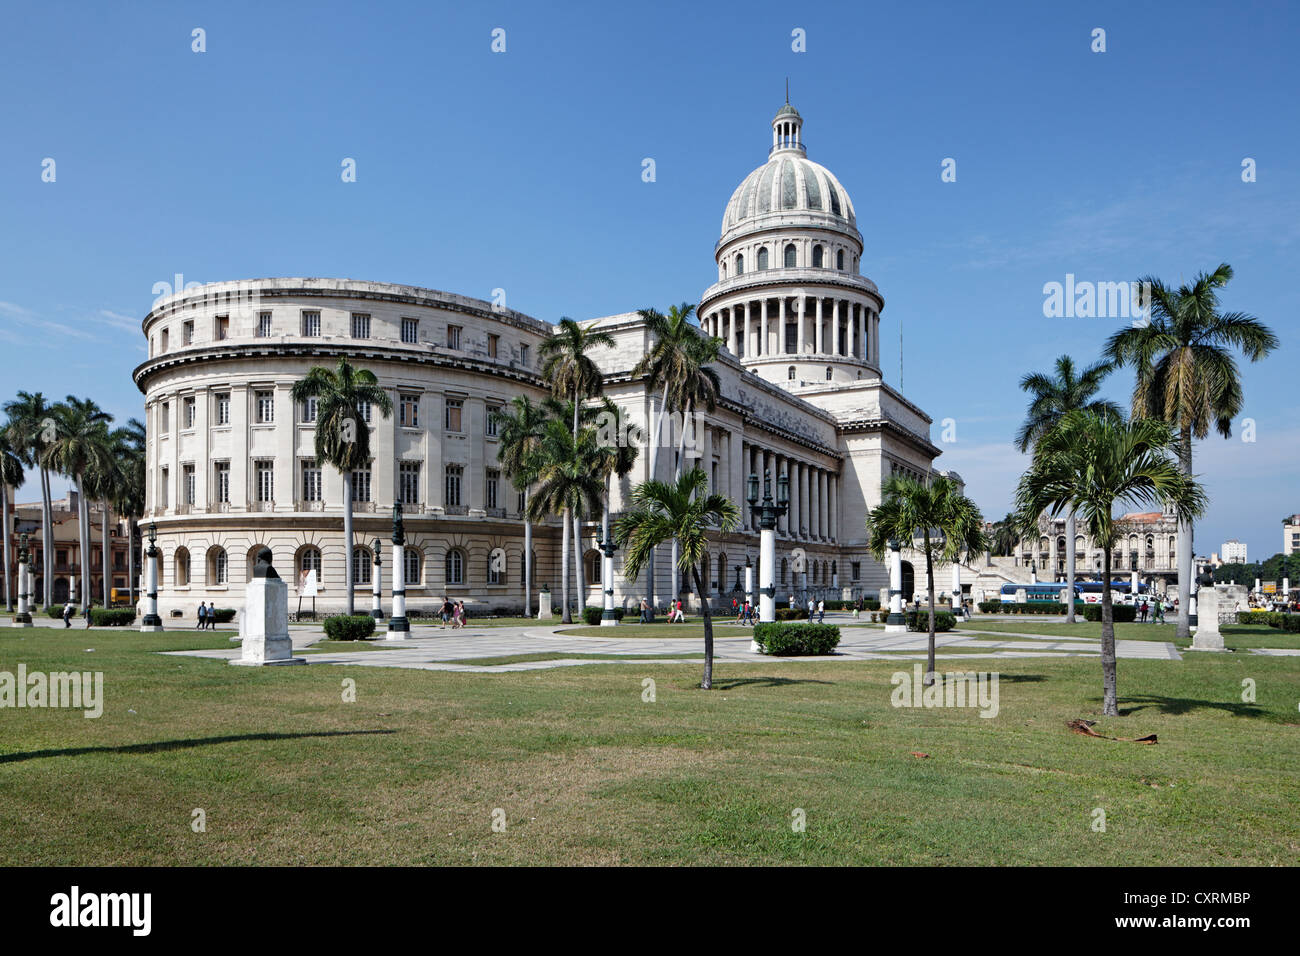 El Capitolio oder National Capitol Building, Altstadt, UNESCO-Weltkulturerbe Hertiage, Villa San Cristobal De La Habana, La Habana Stockfoto